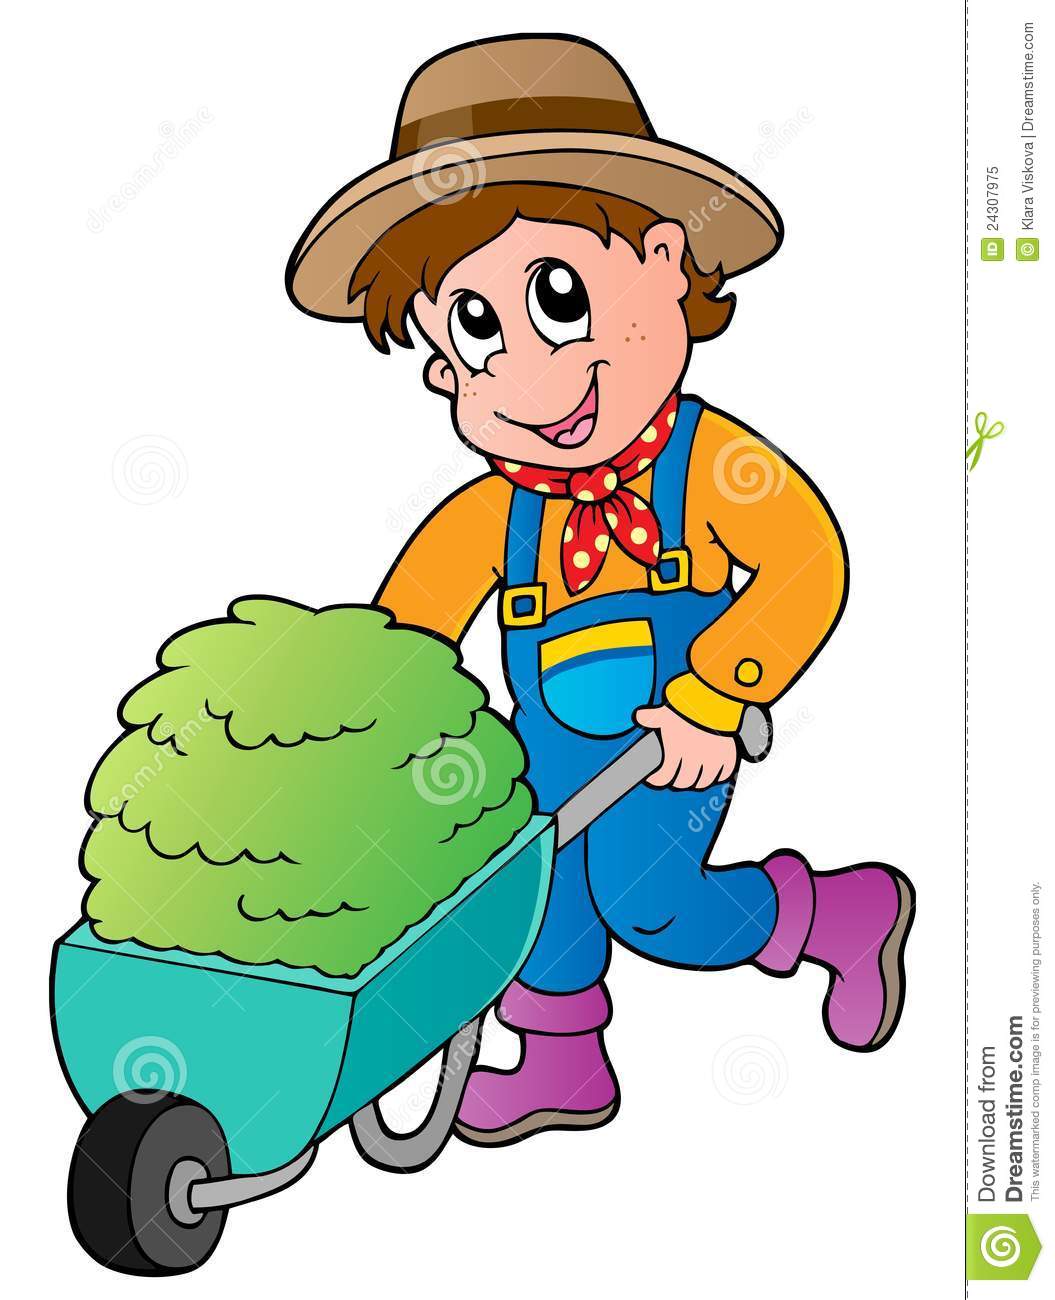 Cartoon Farmer With Small Hay Cart Royalty Free Stock Photo   Image